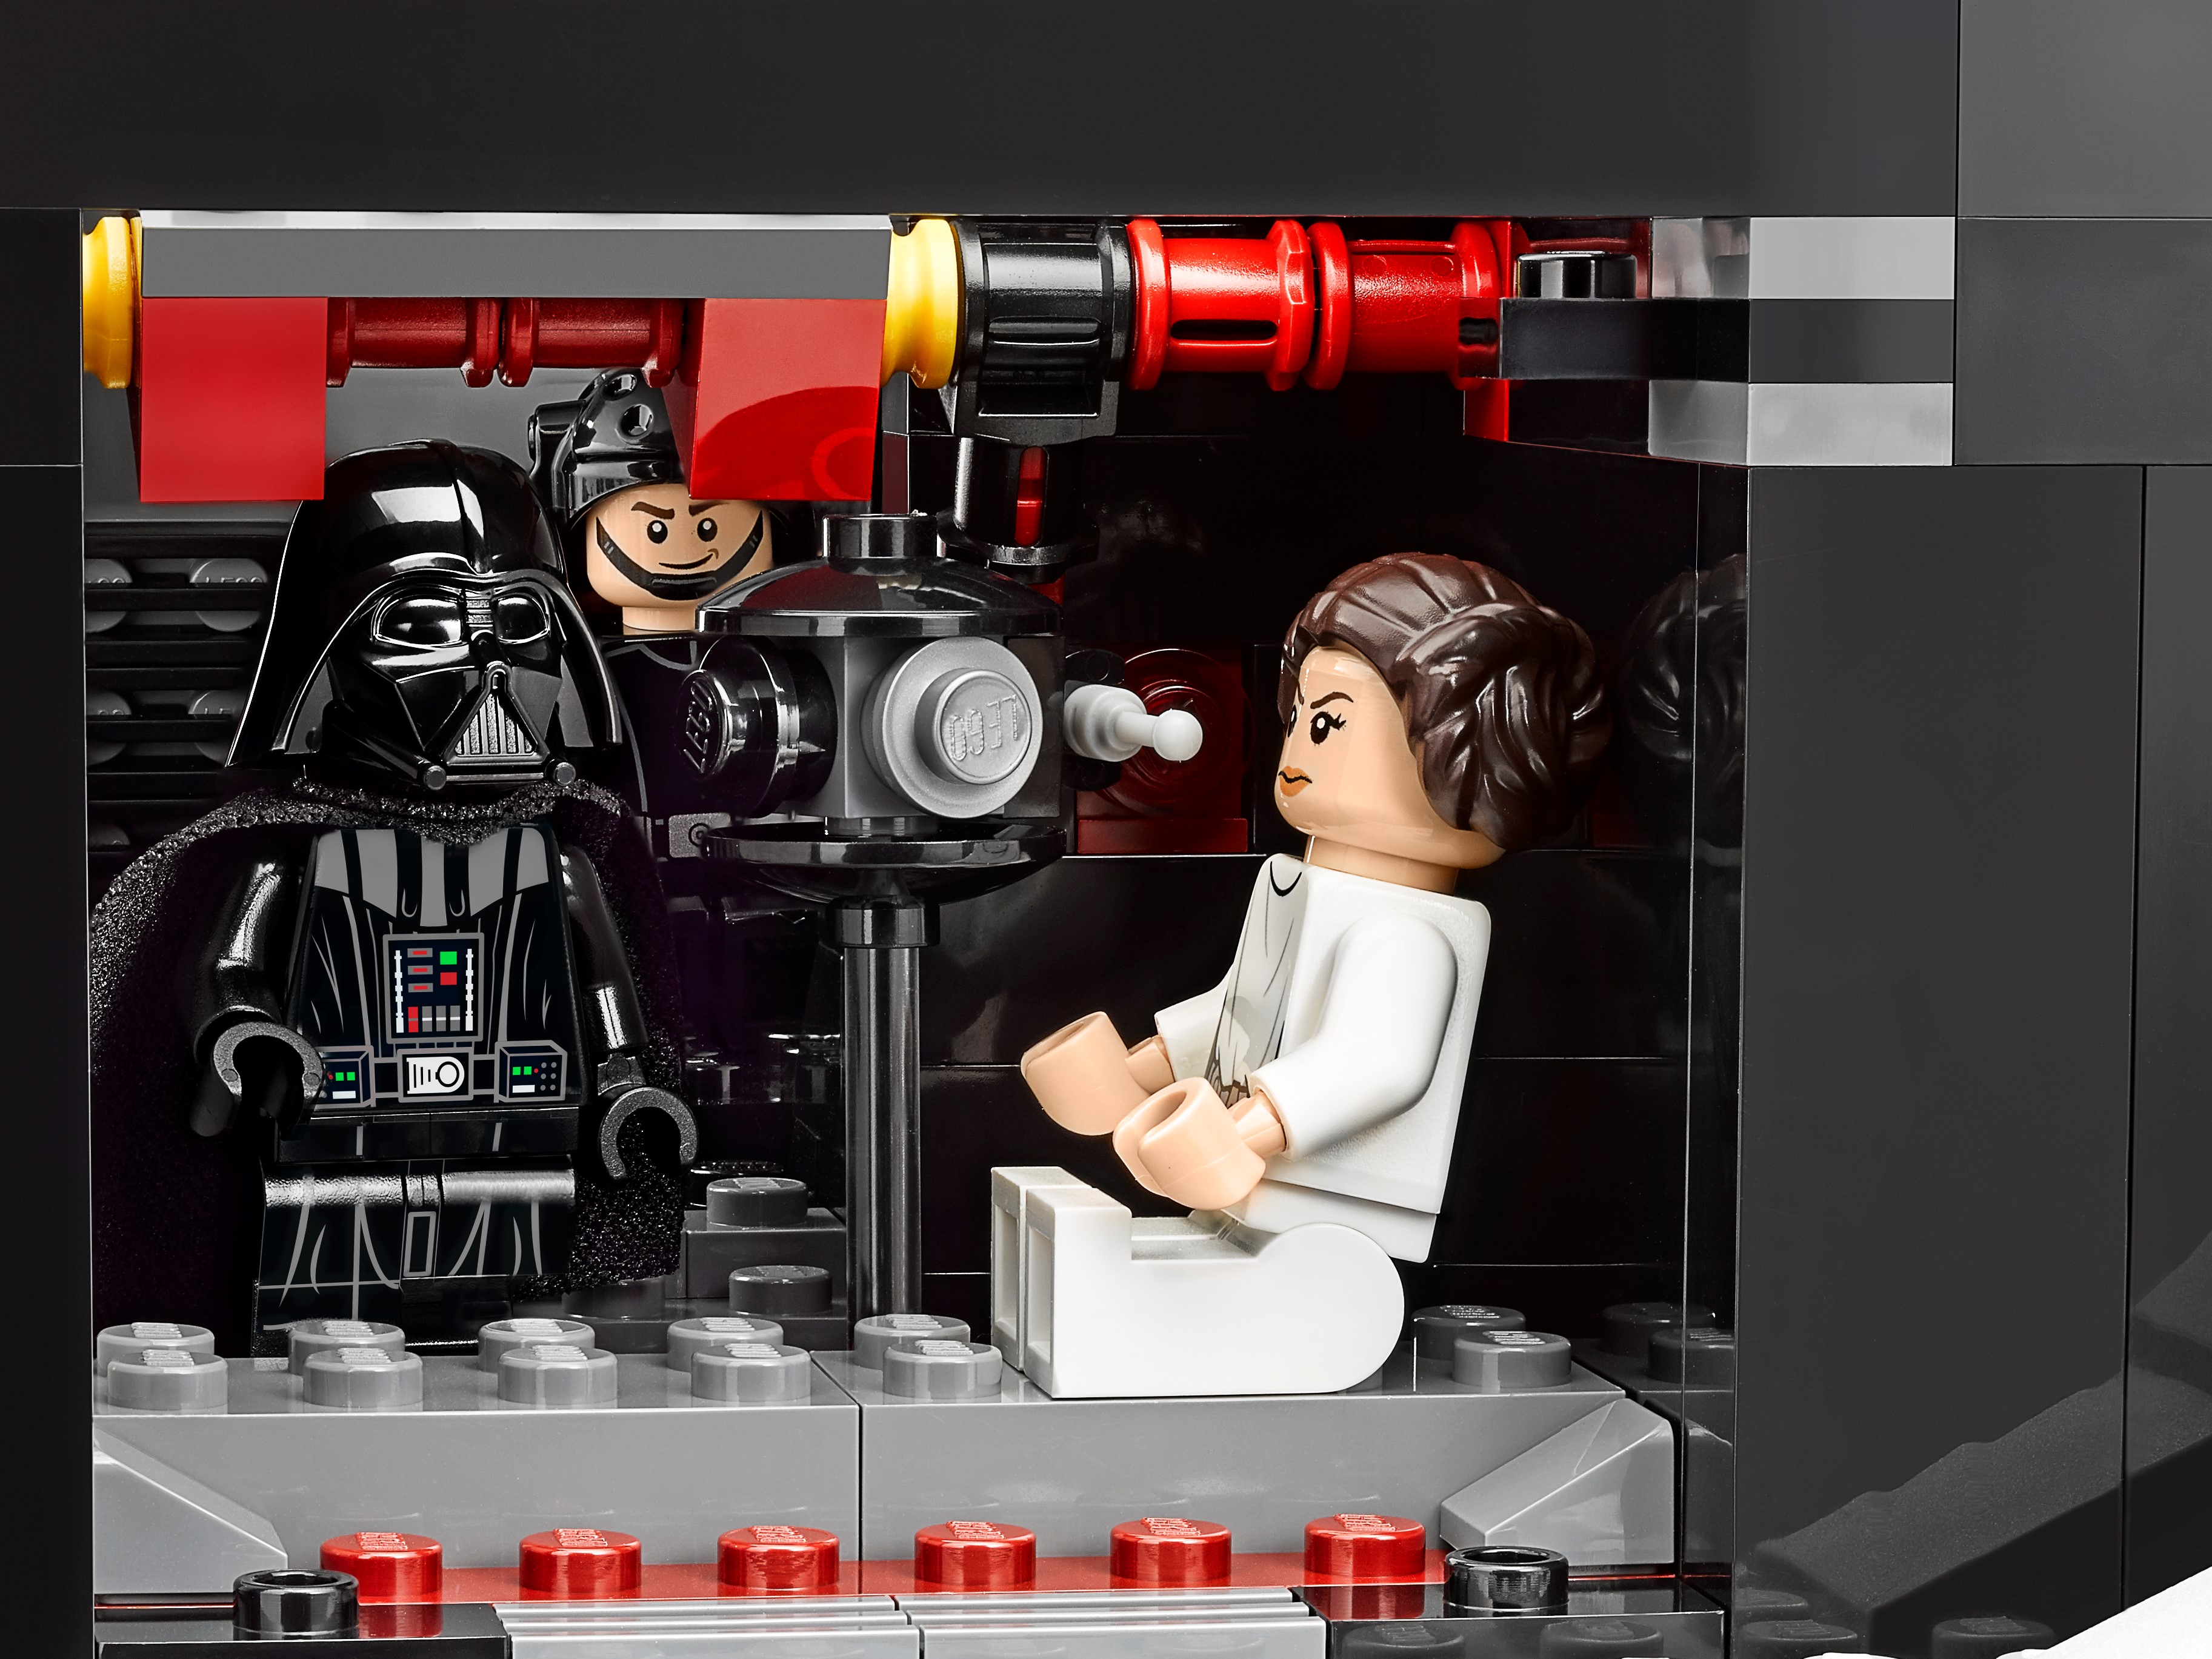 LEGO Star Wars 75159 pas cher, L'Étoile de la Mort